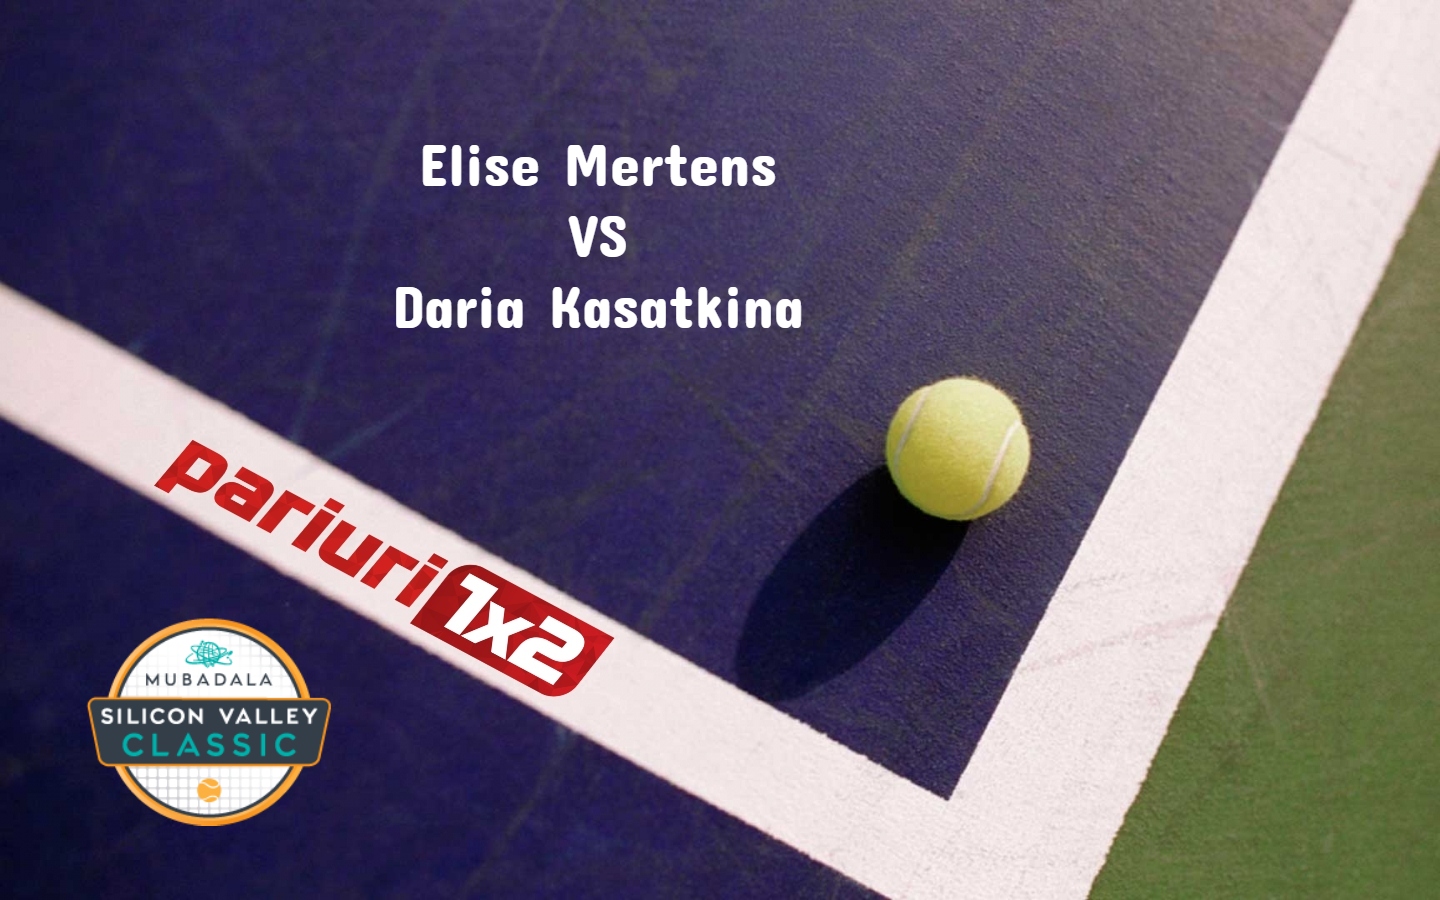 Pariuri tenis » Mertens – Kasatkina: Avem o favorita pentru prima semifinala de la WTA San Jose 2021!